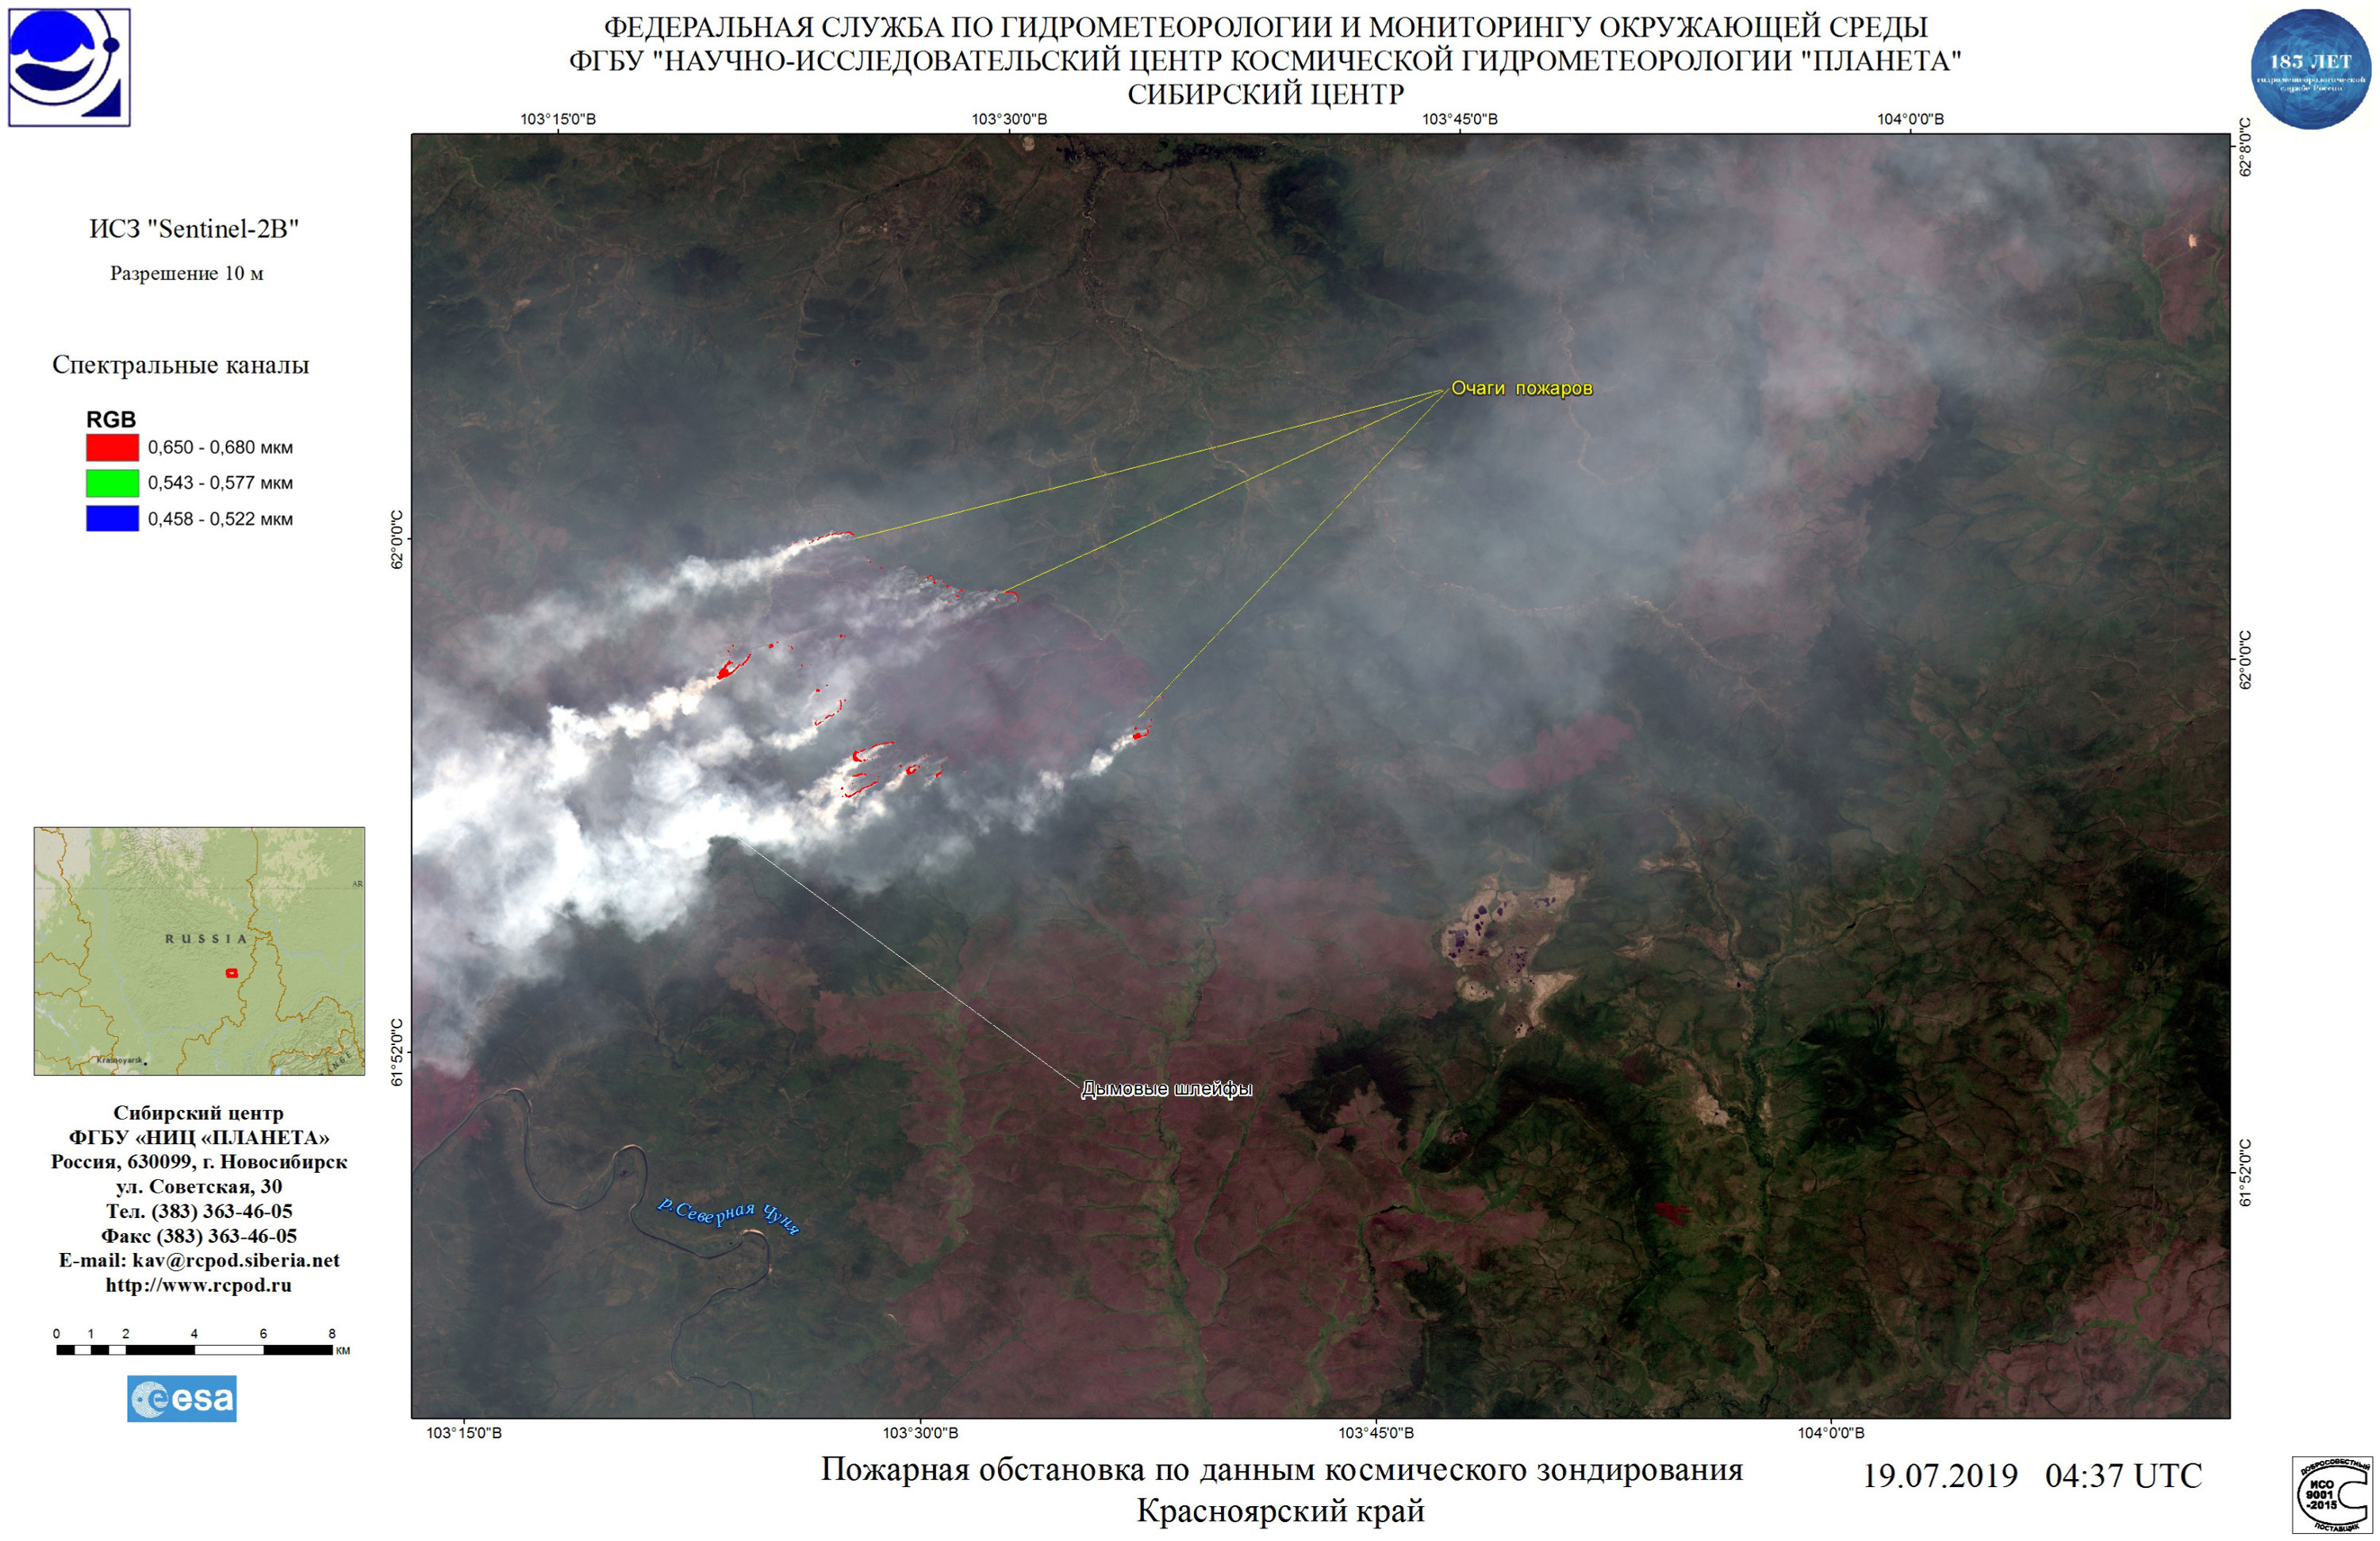 Дым от лесных пожаров тянется на запад, в сторону Новосибирской области